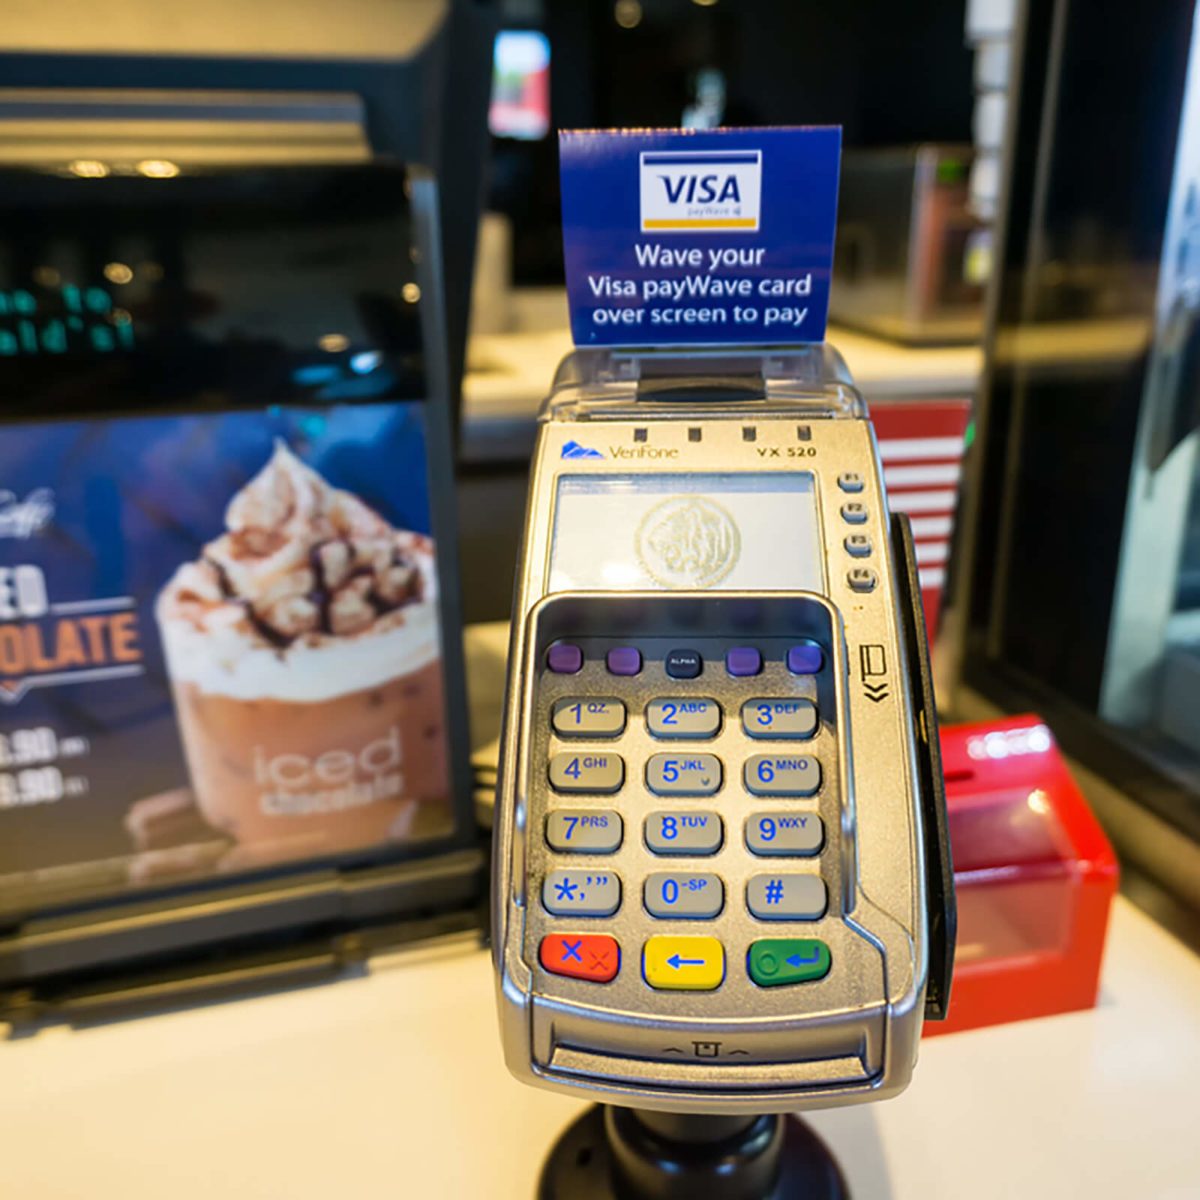 麦当劳麦咖啡餐厅收银台的信用卡和借记卡读卡器。